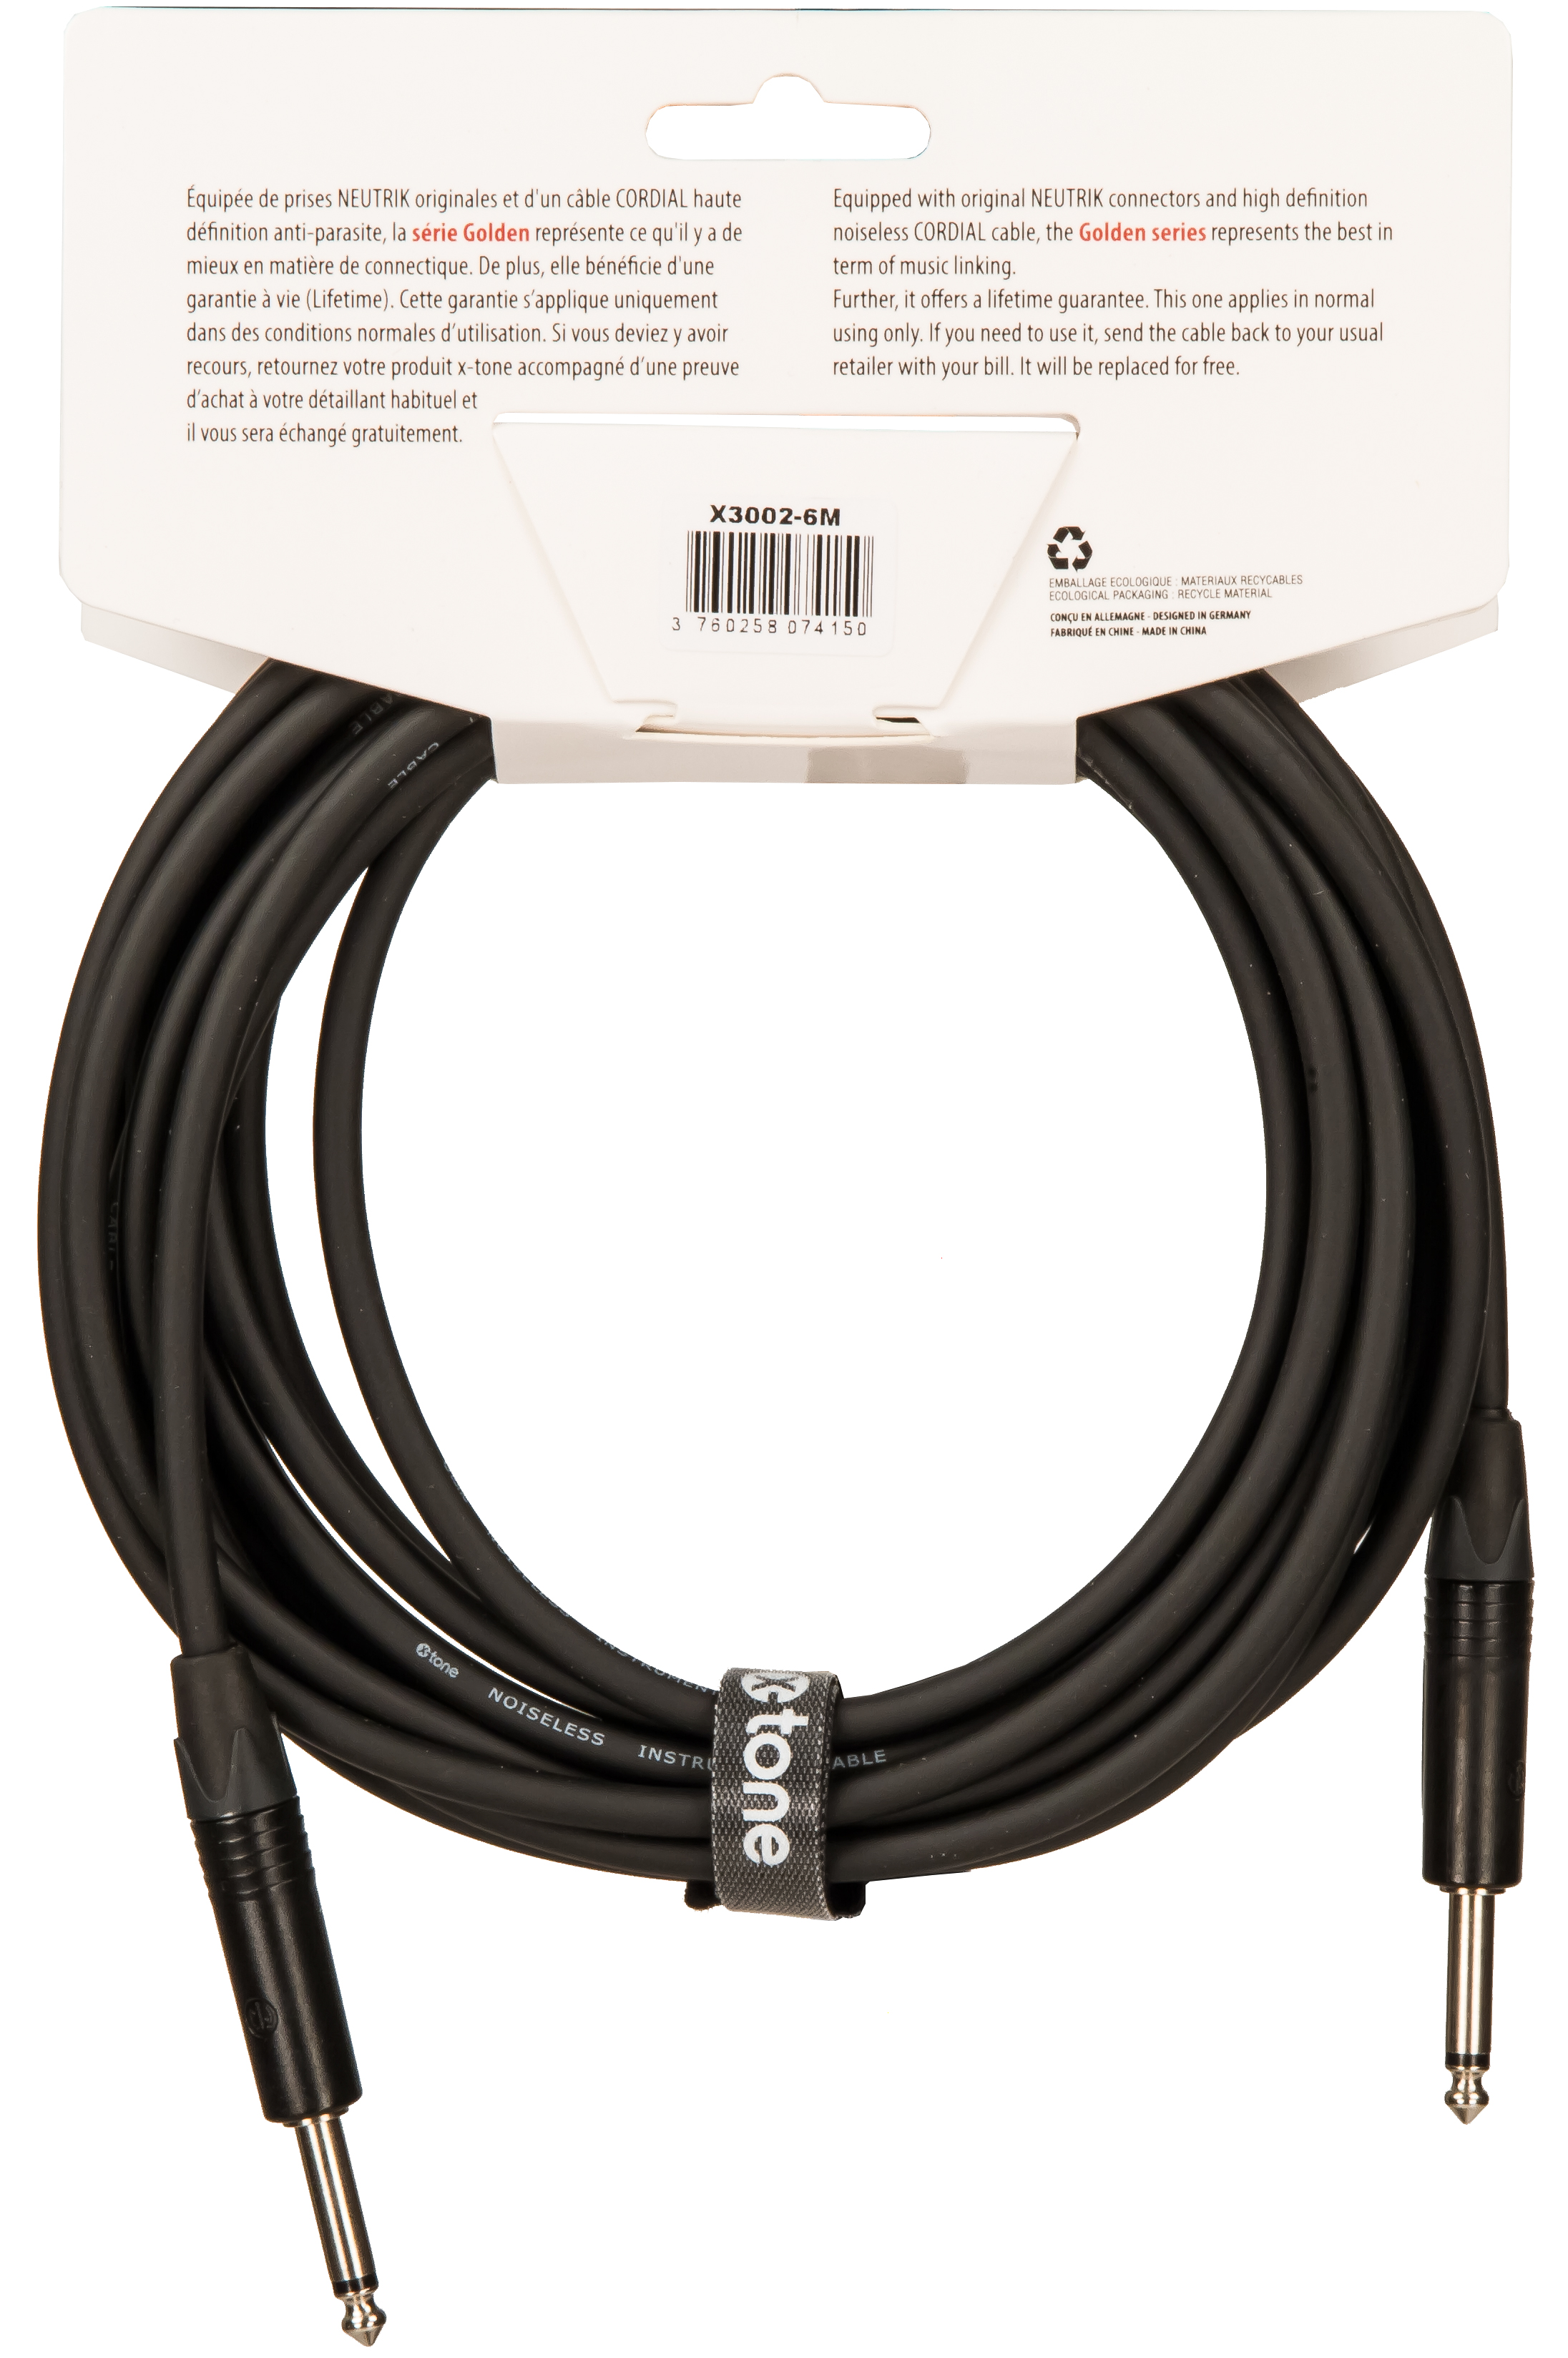 X-tone X3002-6m Instrument Cable Golden Series Neutrik Droit/droit 6m - Cable - Variation 1